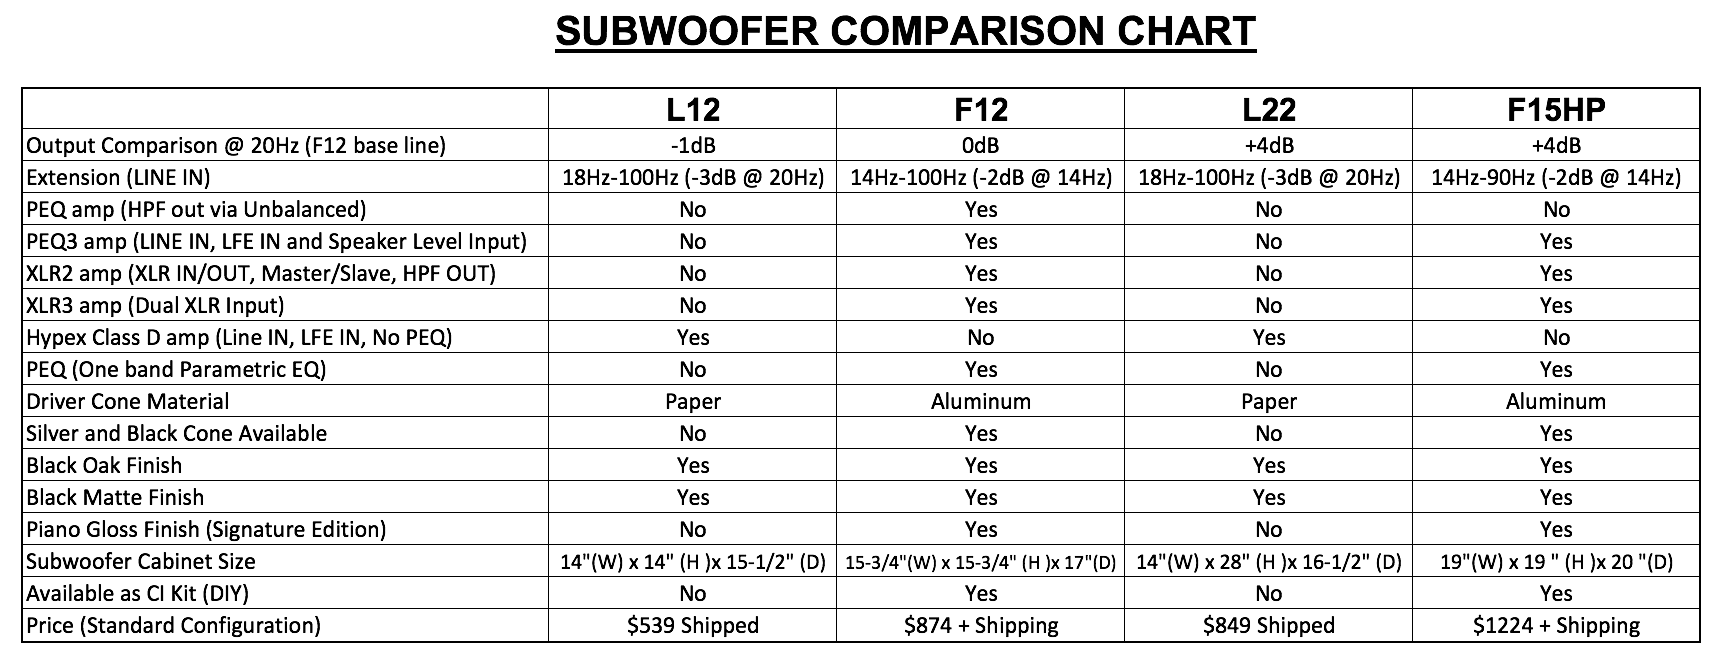 Subwoofer Comparison Chart